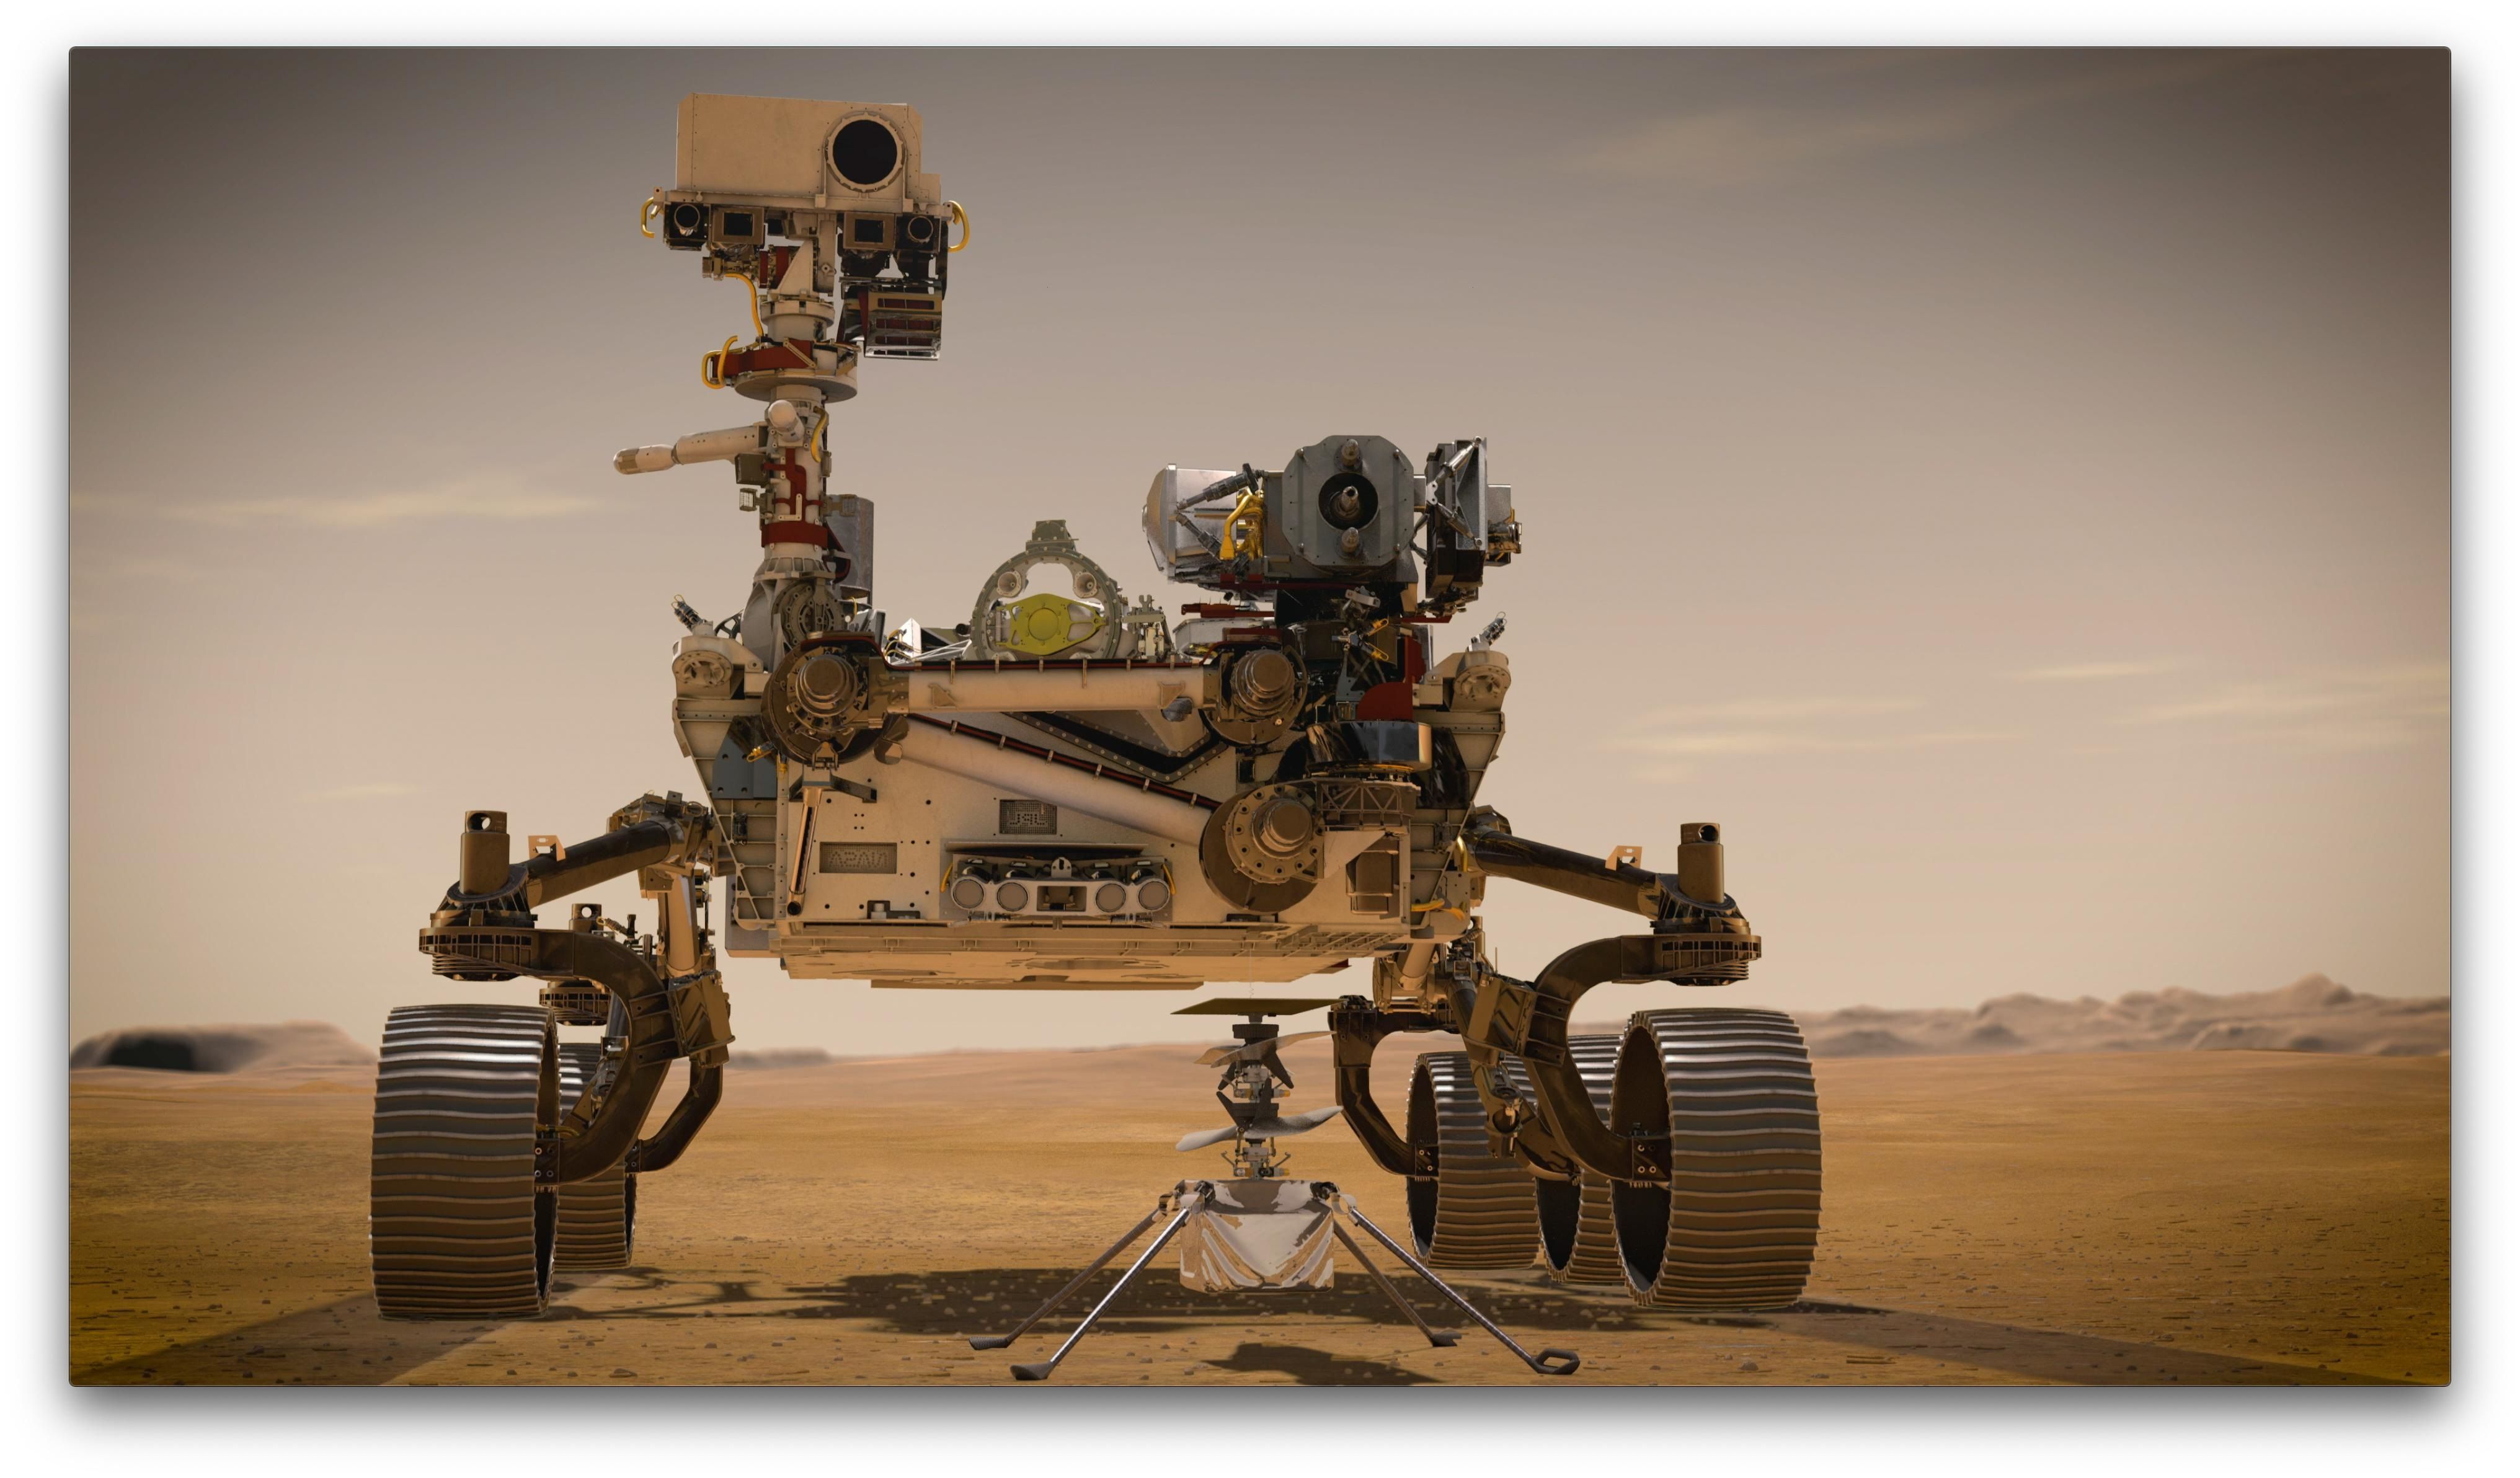 Representação do veículo ‘Perseverance' na superfície de Marte.